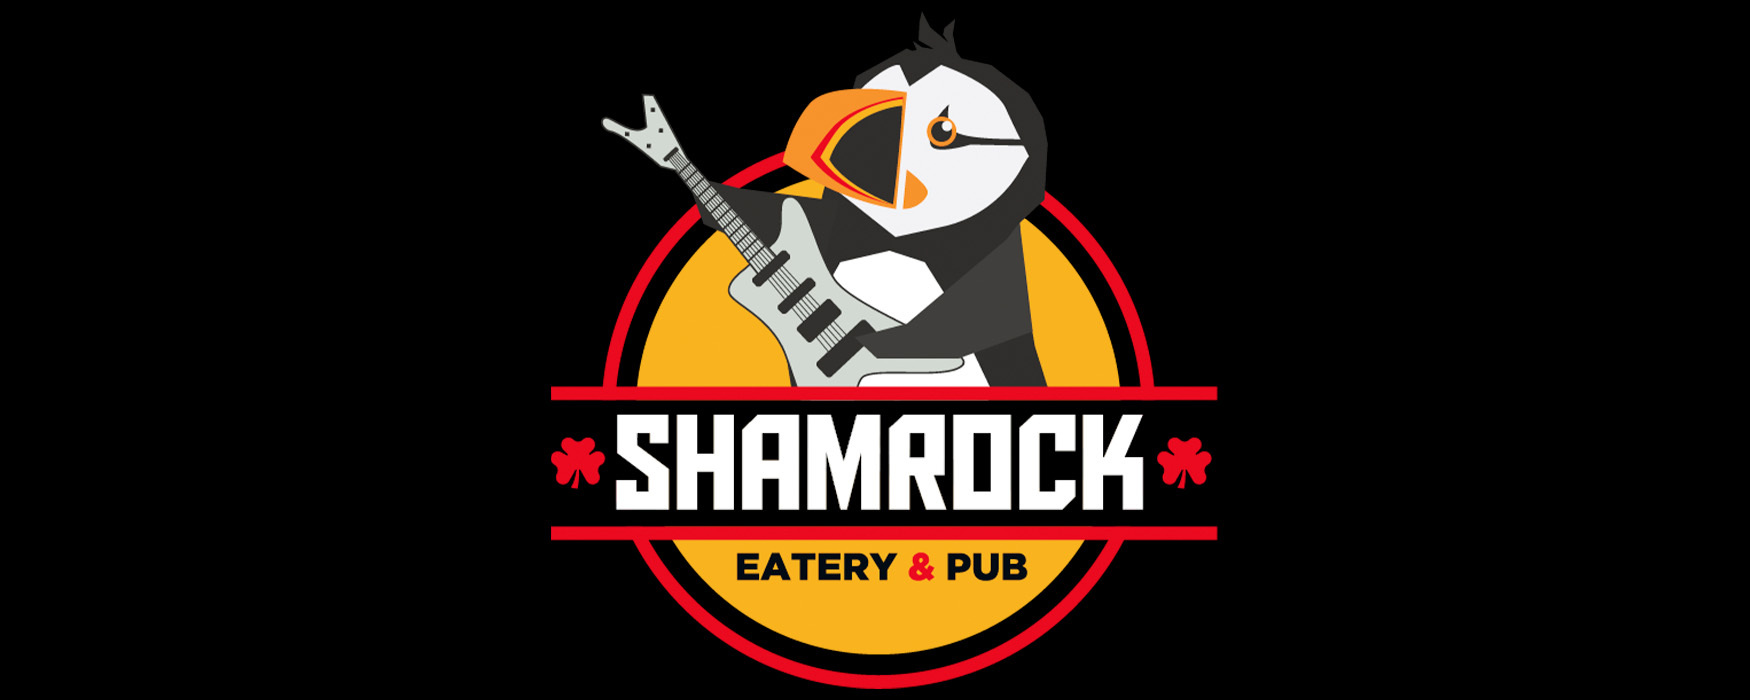 Shamrock Eatery & Pub